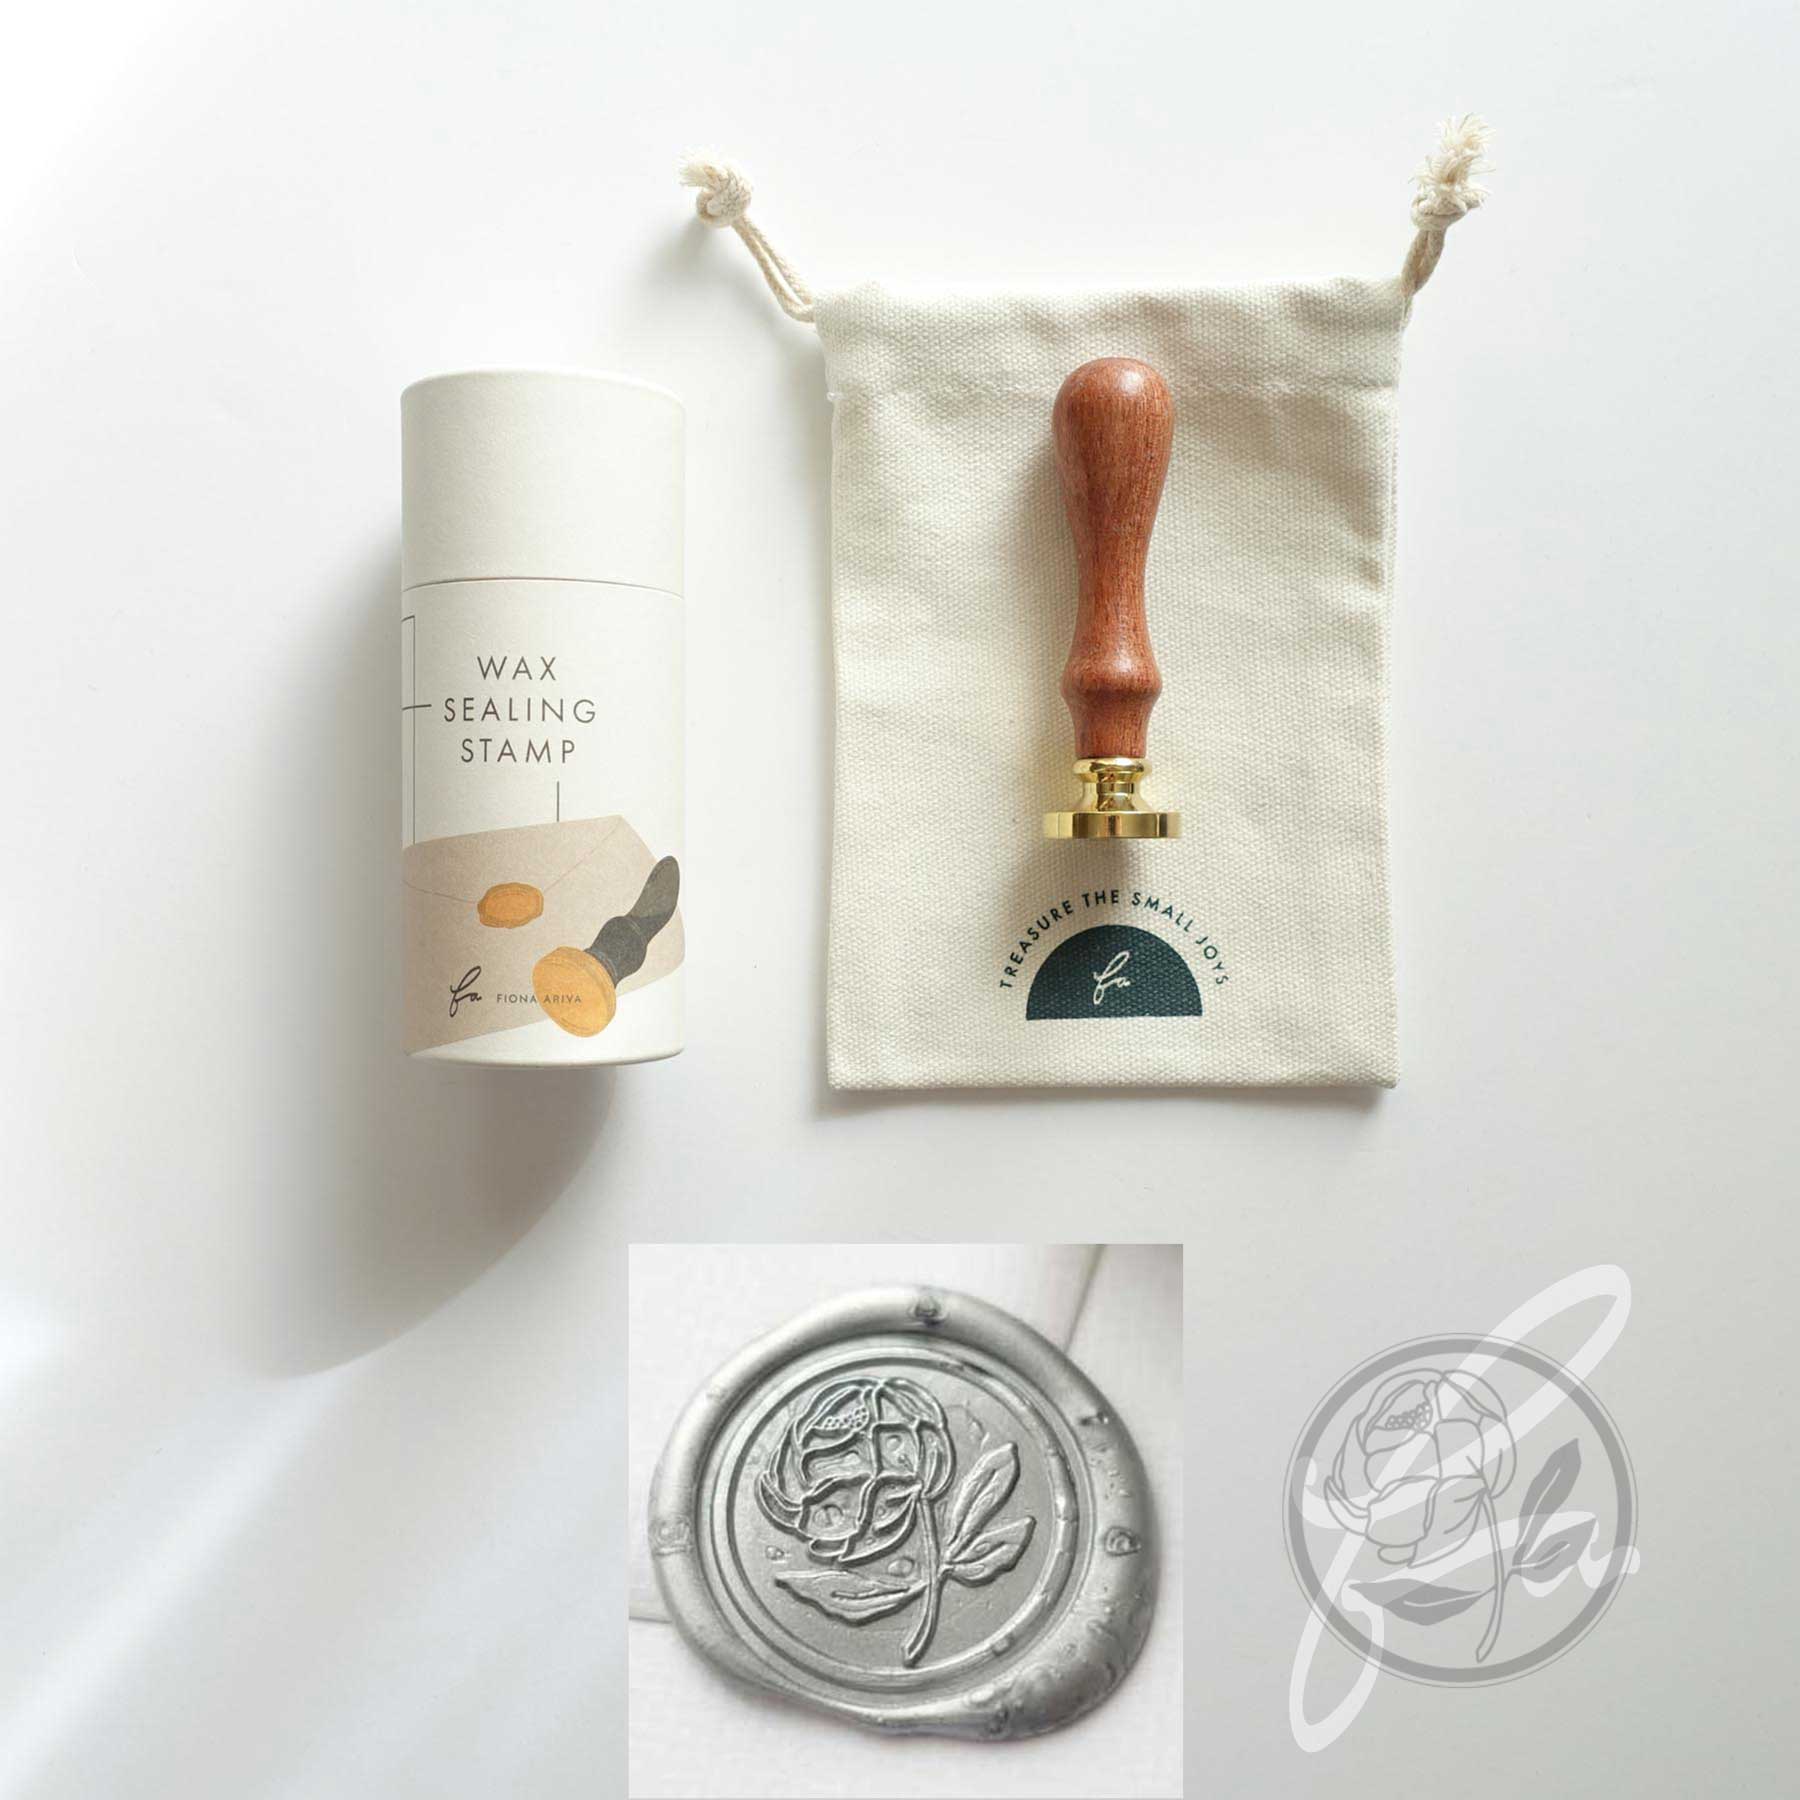 PoooliStationery Wax Seal Stamp Kit